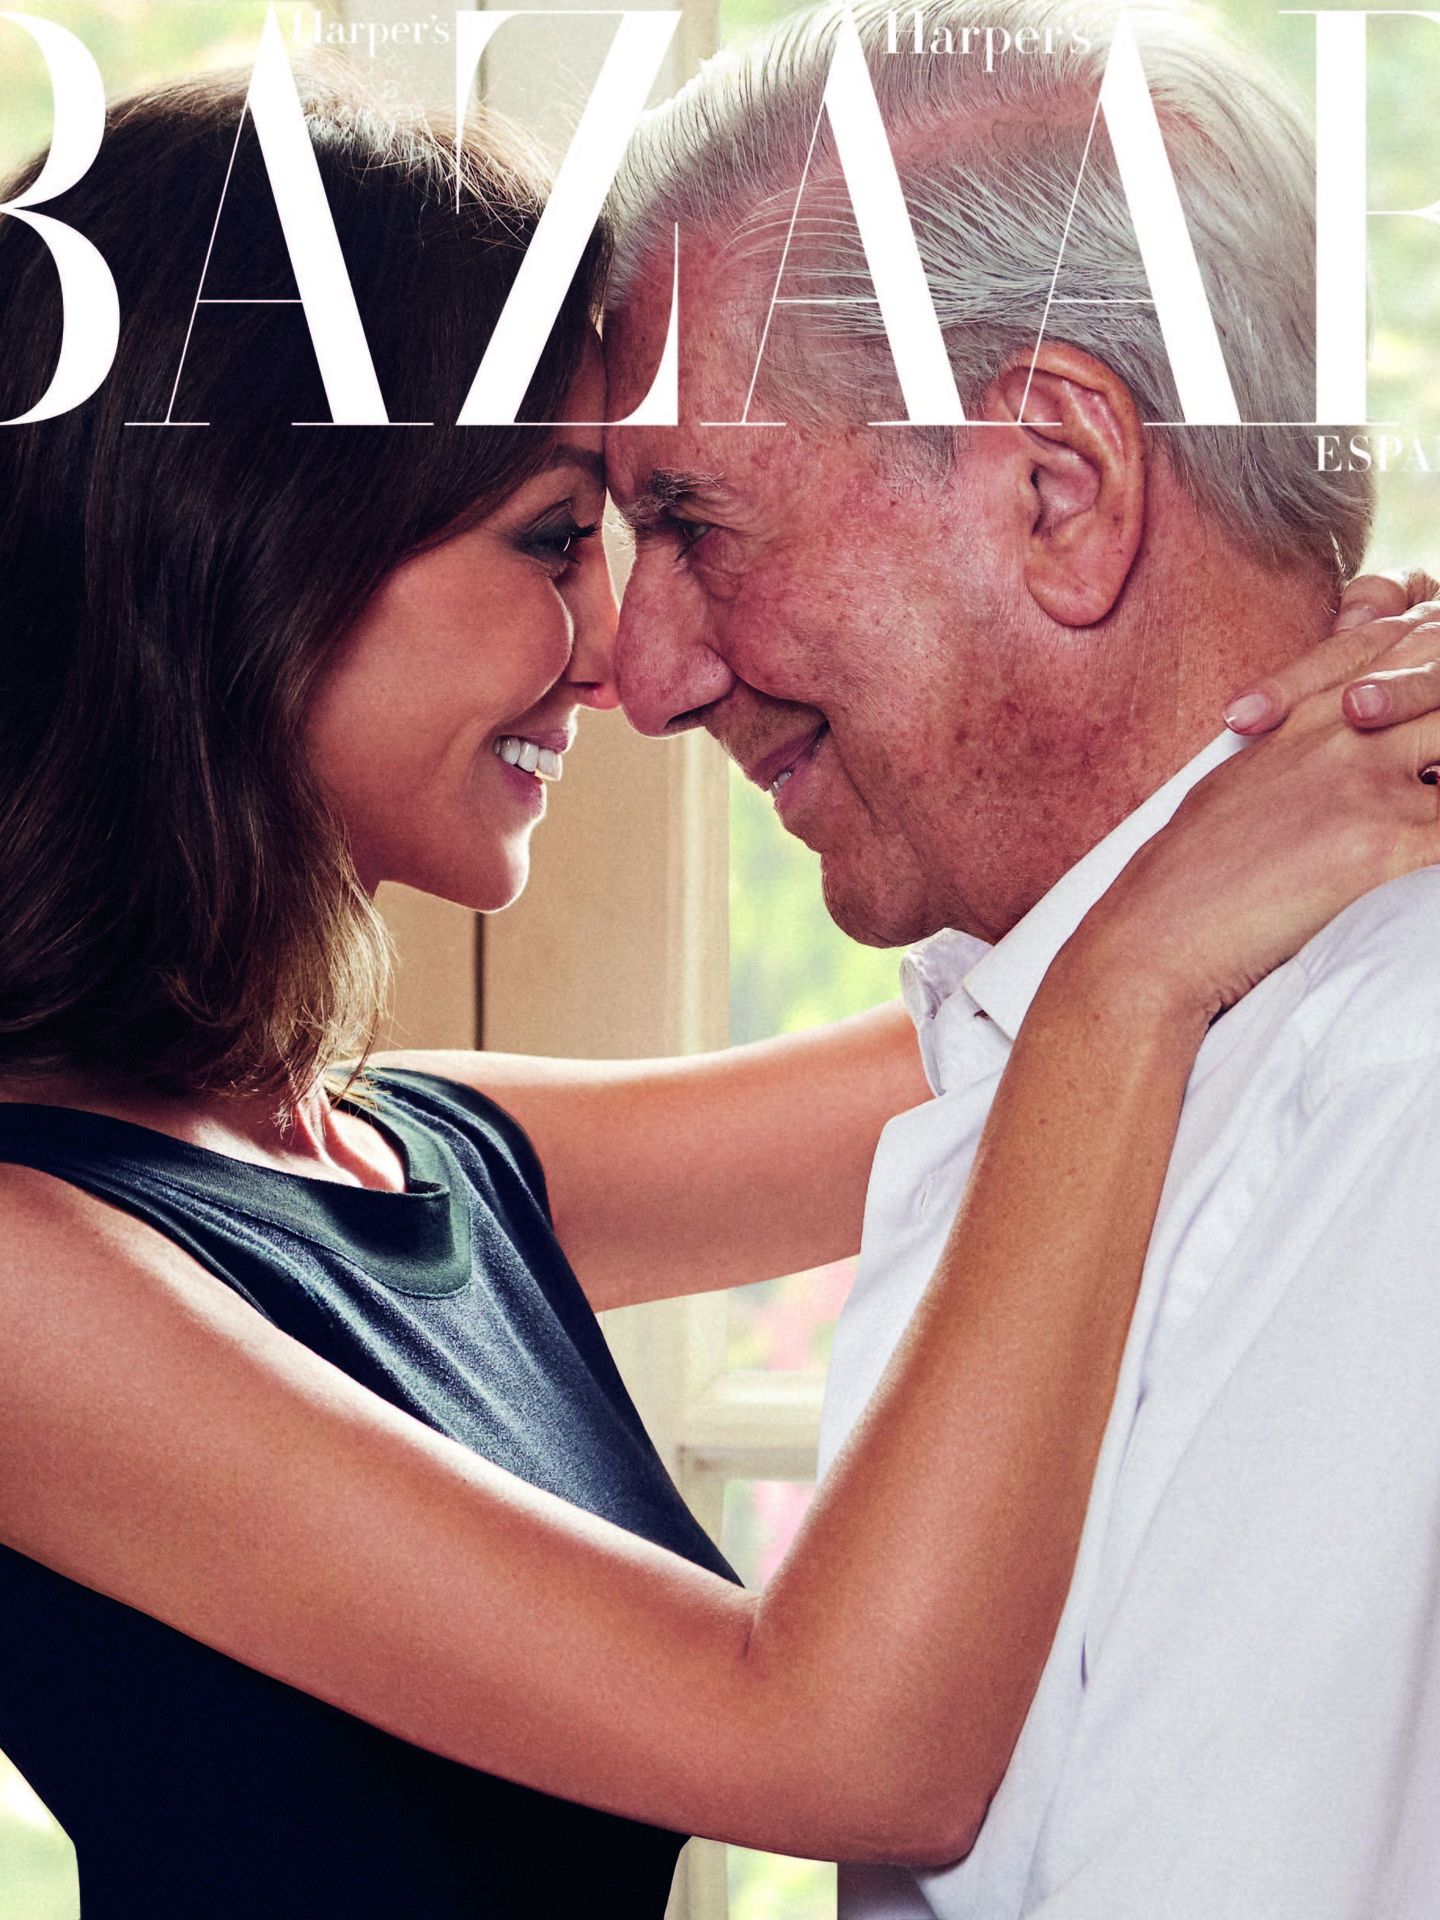 Isabel Preysler y Mario Vargas Llosa para 'Harper's Bazaar'. (Harper's Bazaar)